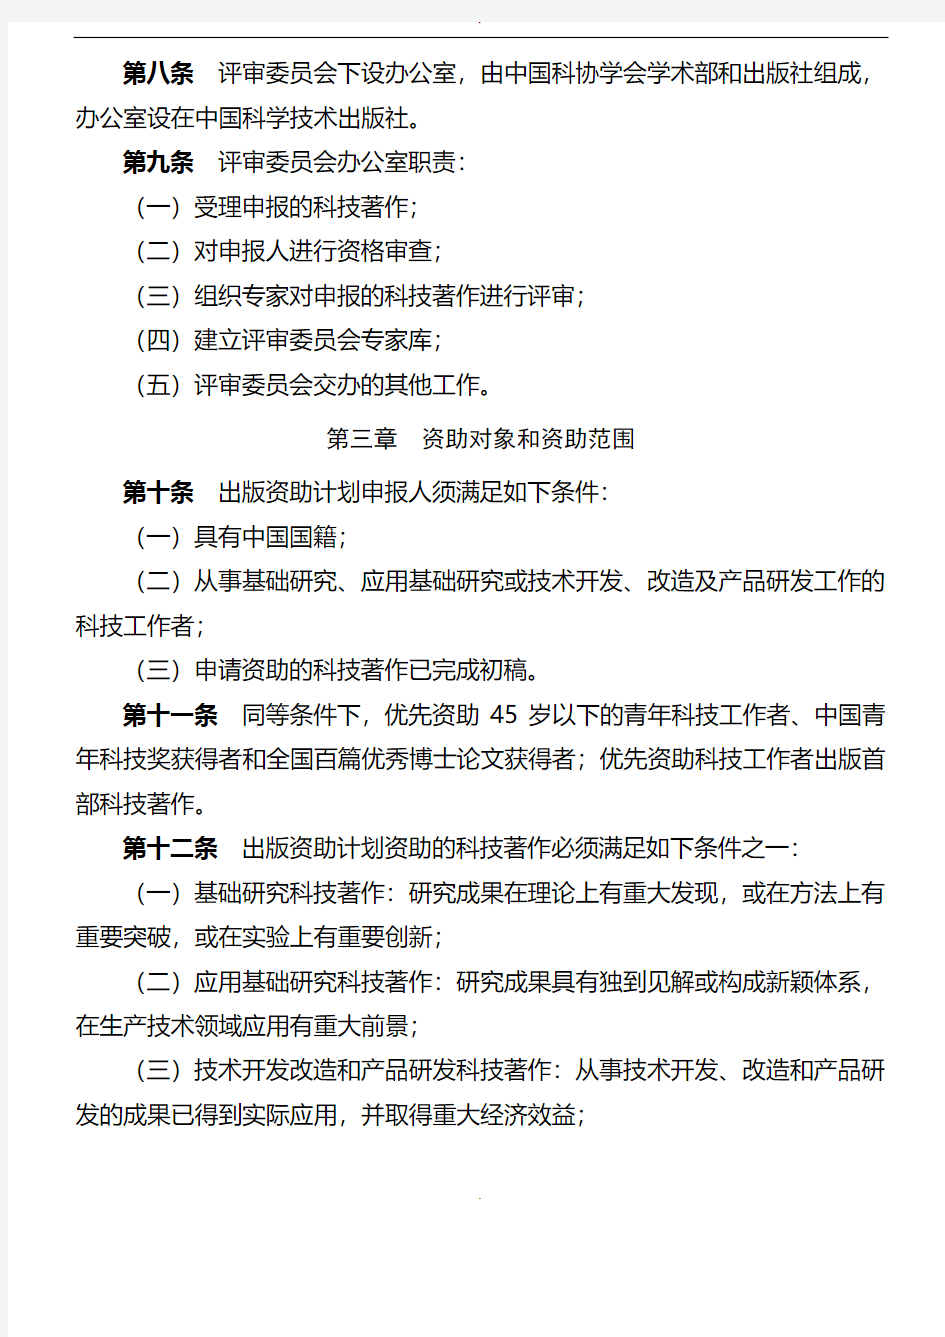 中国科协三峡科技出版资助计划管理办法(试行)